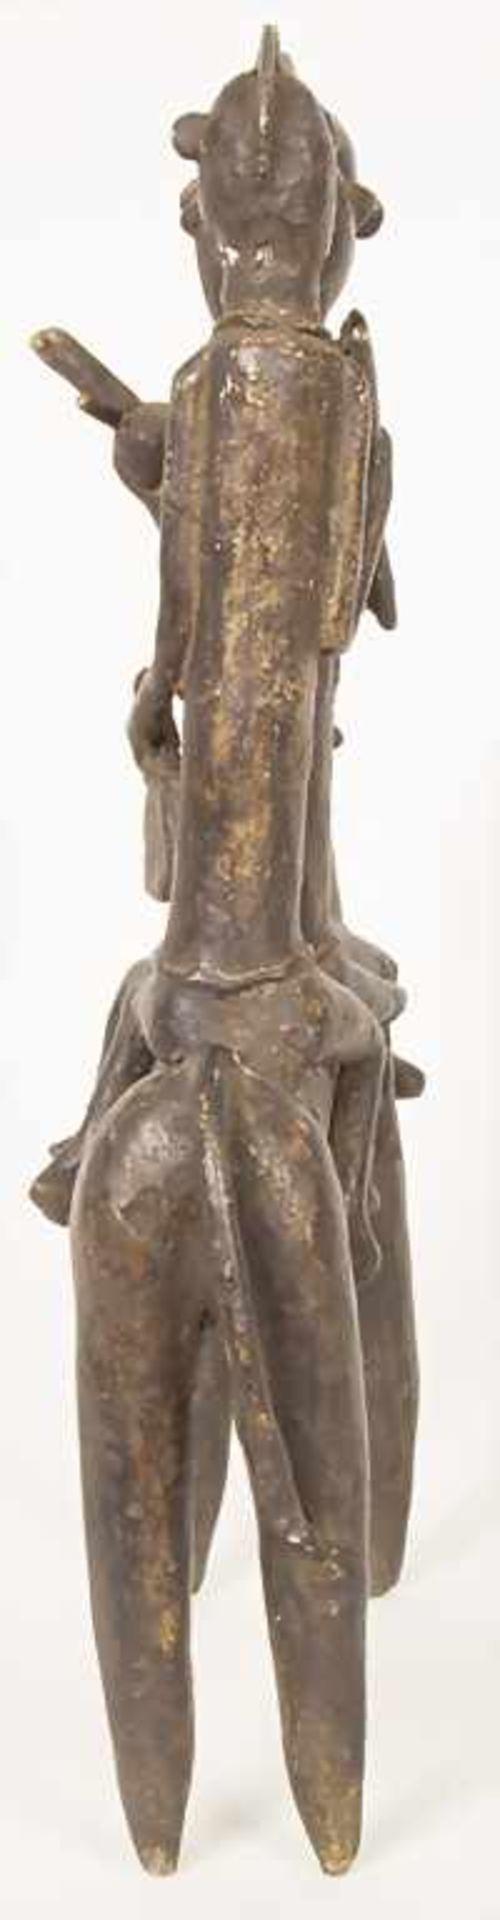 Reiterfigur, Kotoko, Tschad, 2. Hälfte 20. Jh.Material: Bronze, braun patiniert,Höhe: 45,5 cm, - Bild 4 aus 5